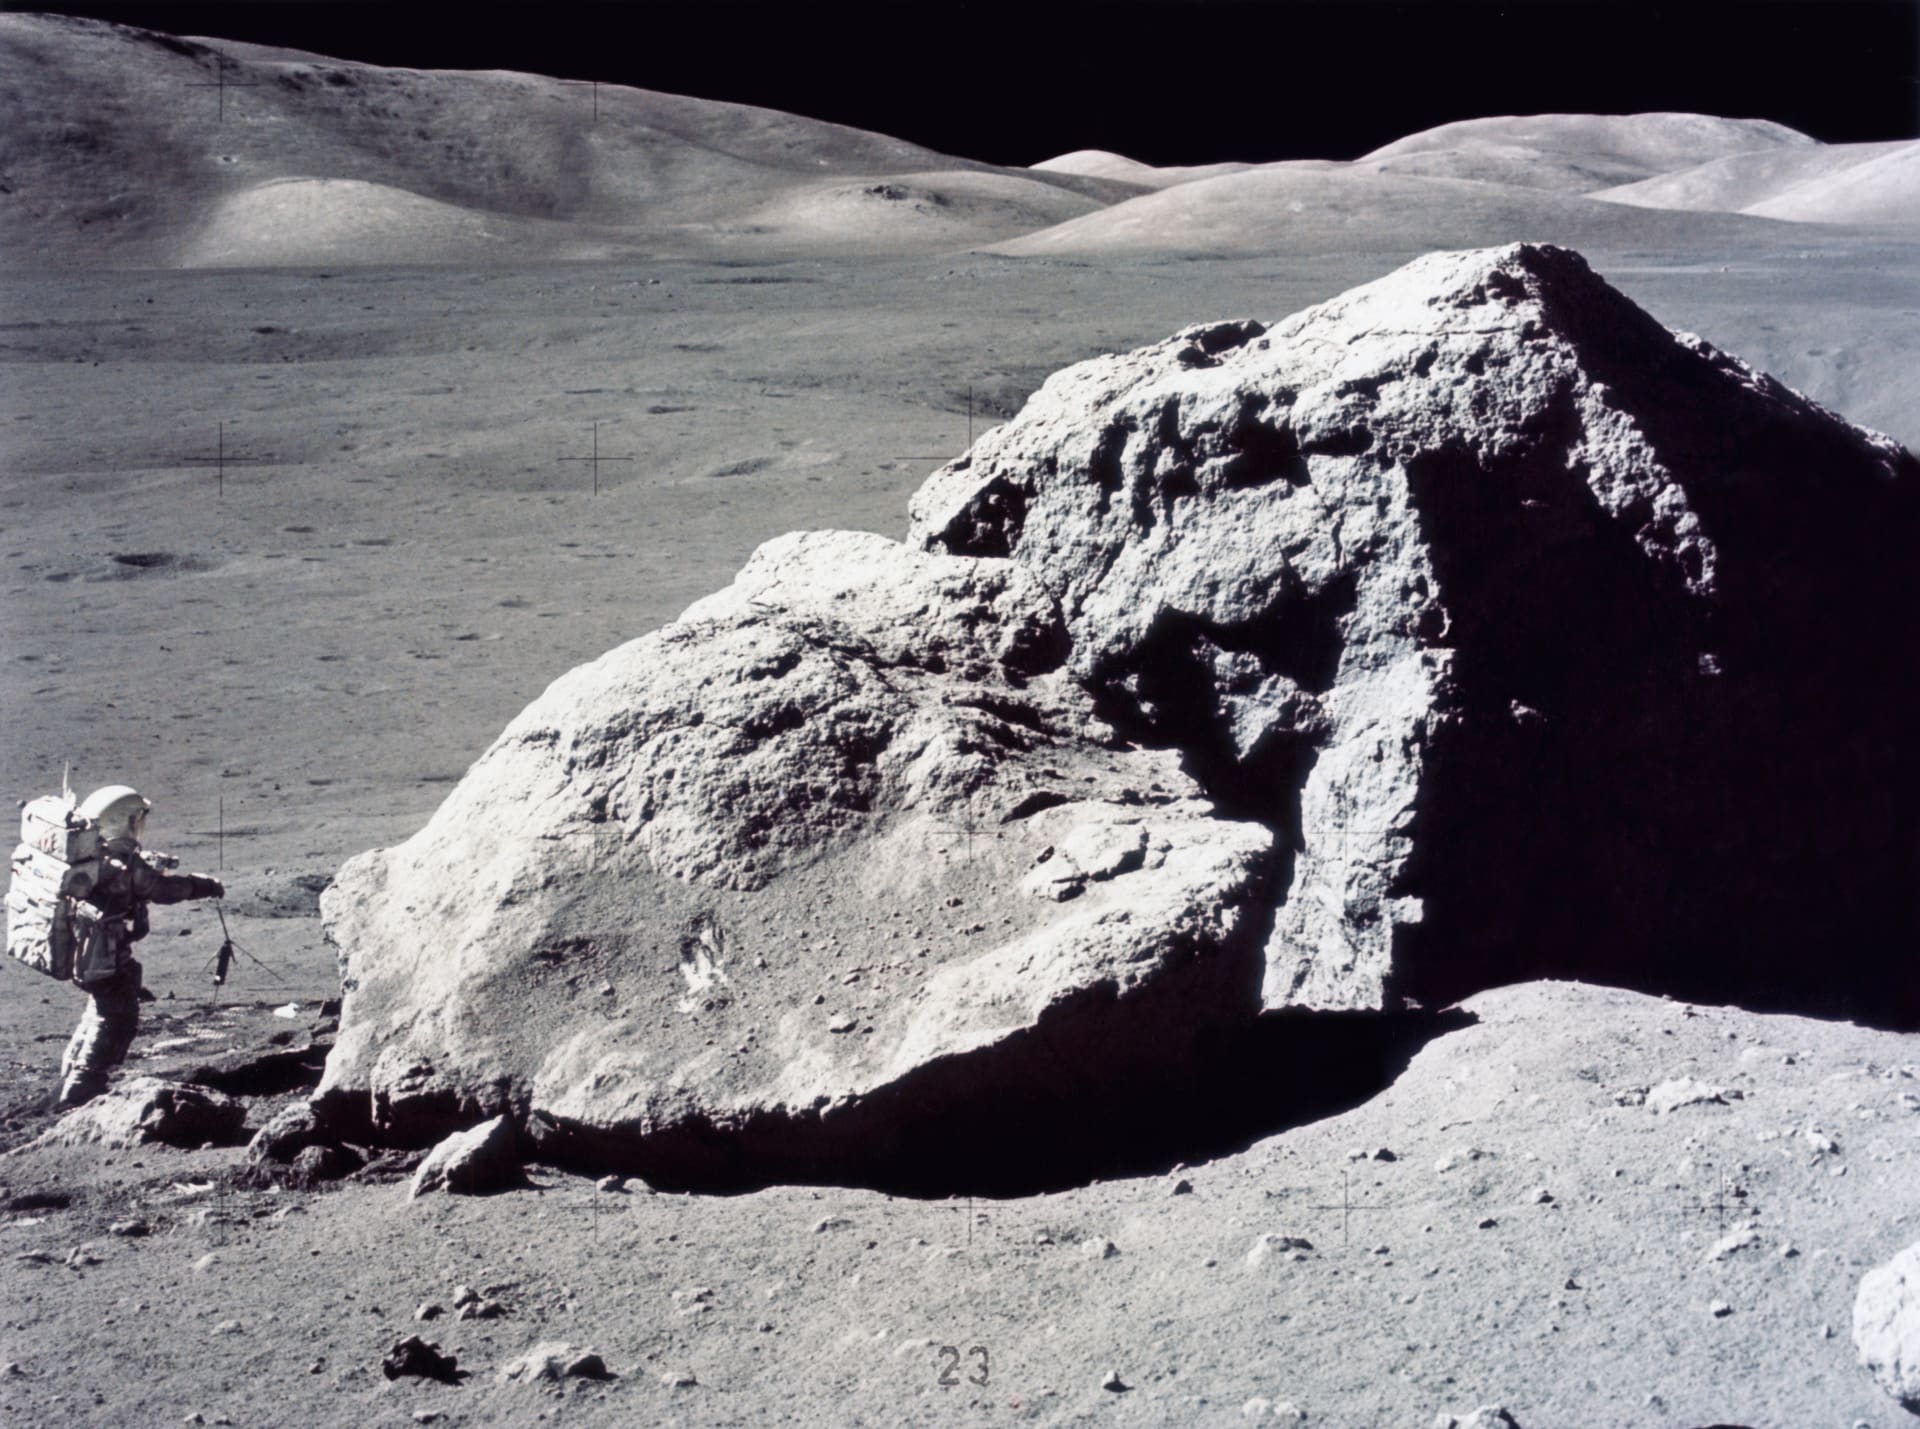 Harrison Schmitt sbírá vzorky na Měsíci